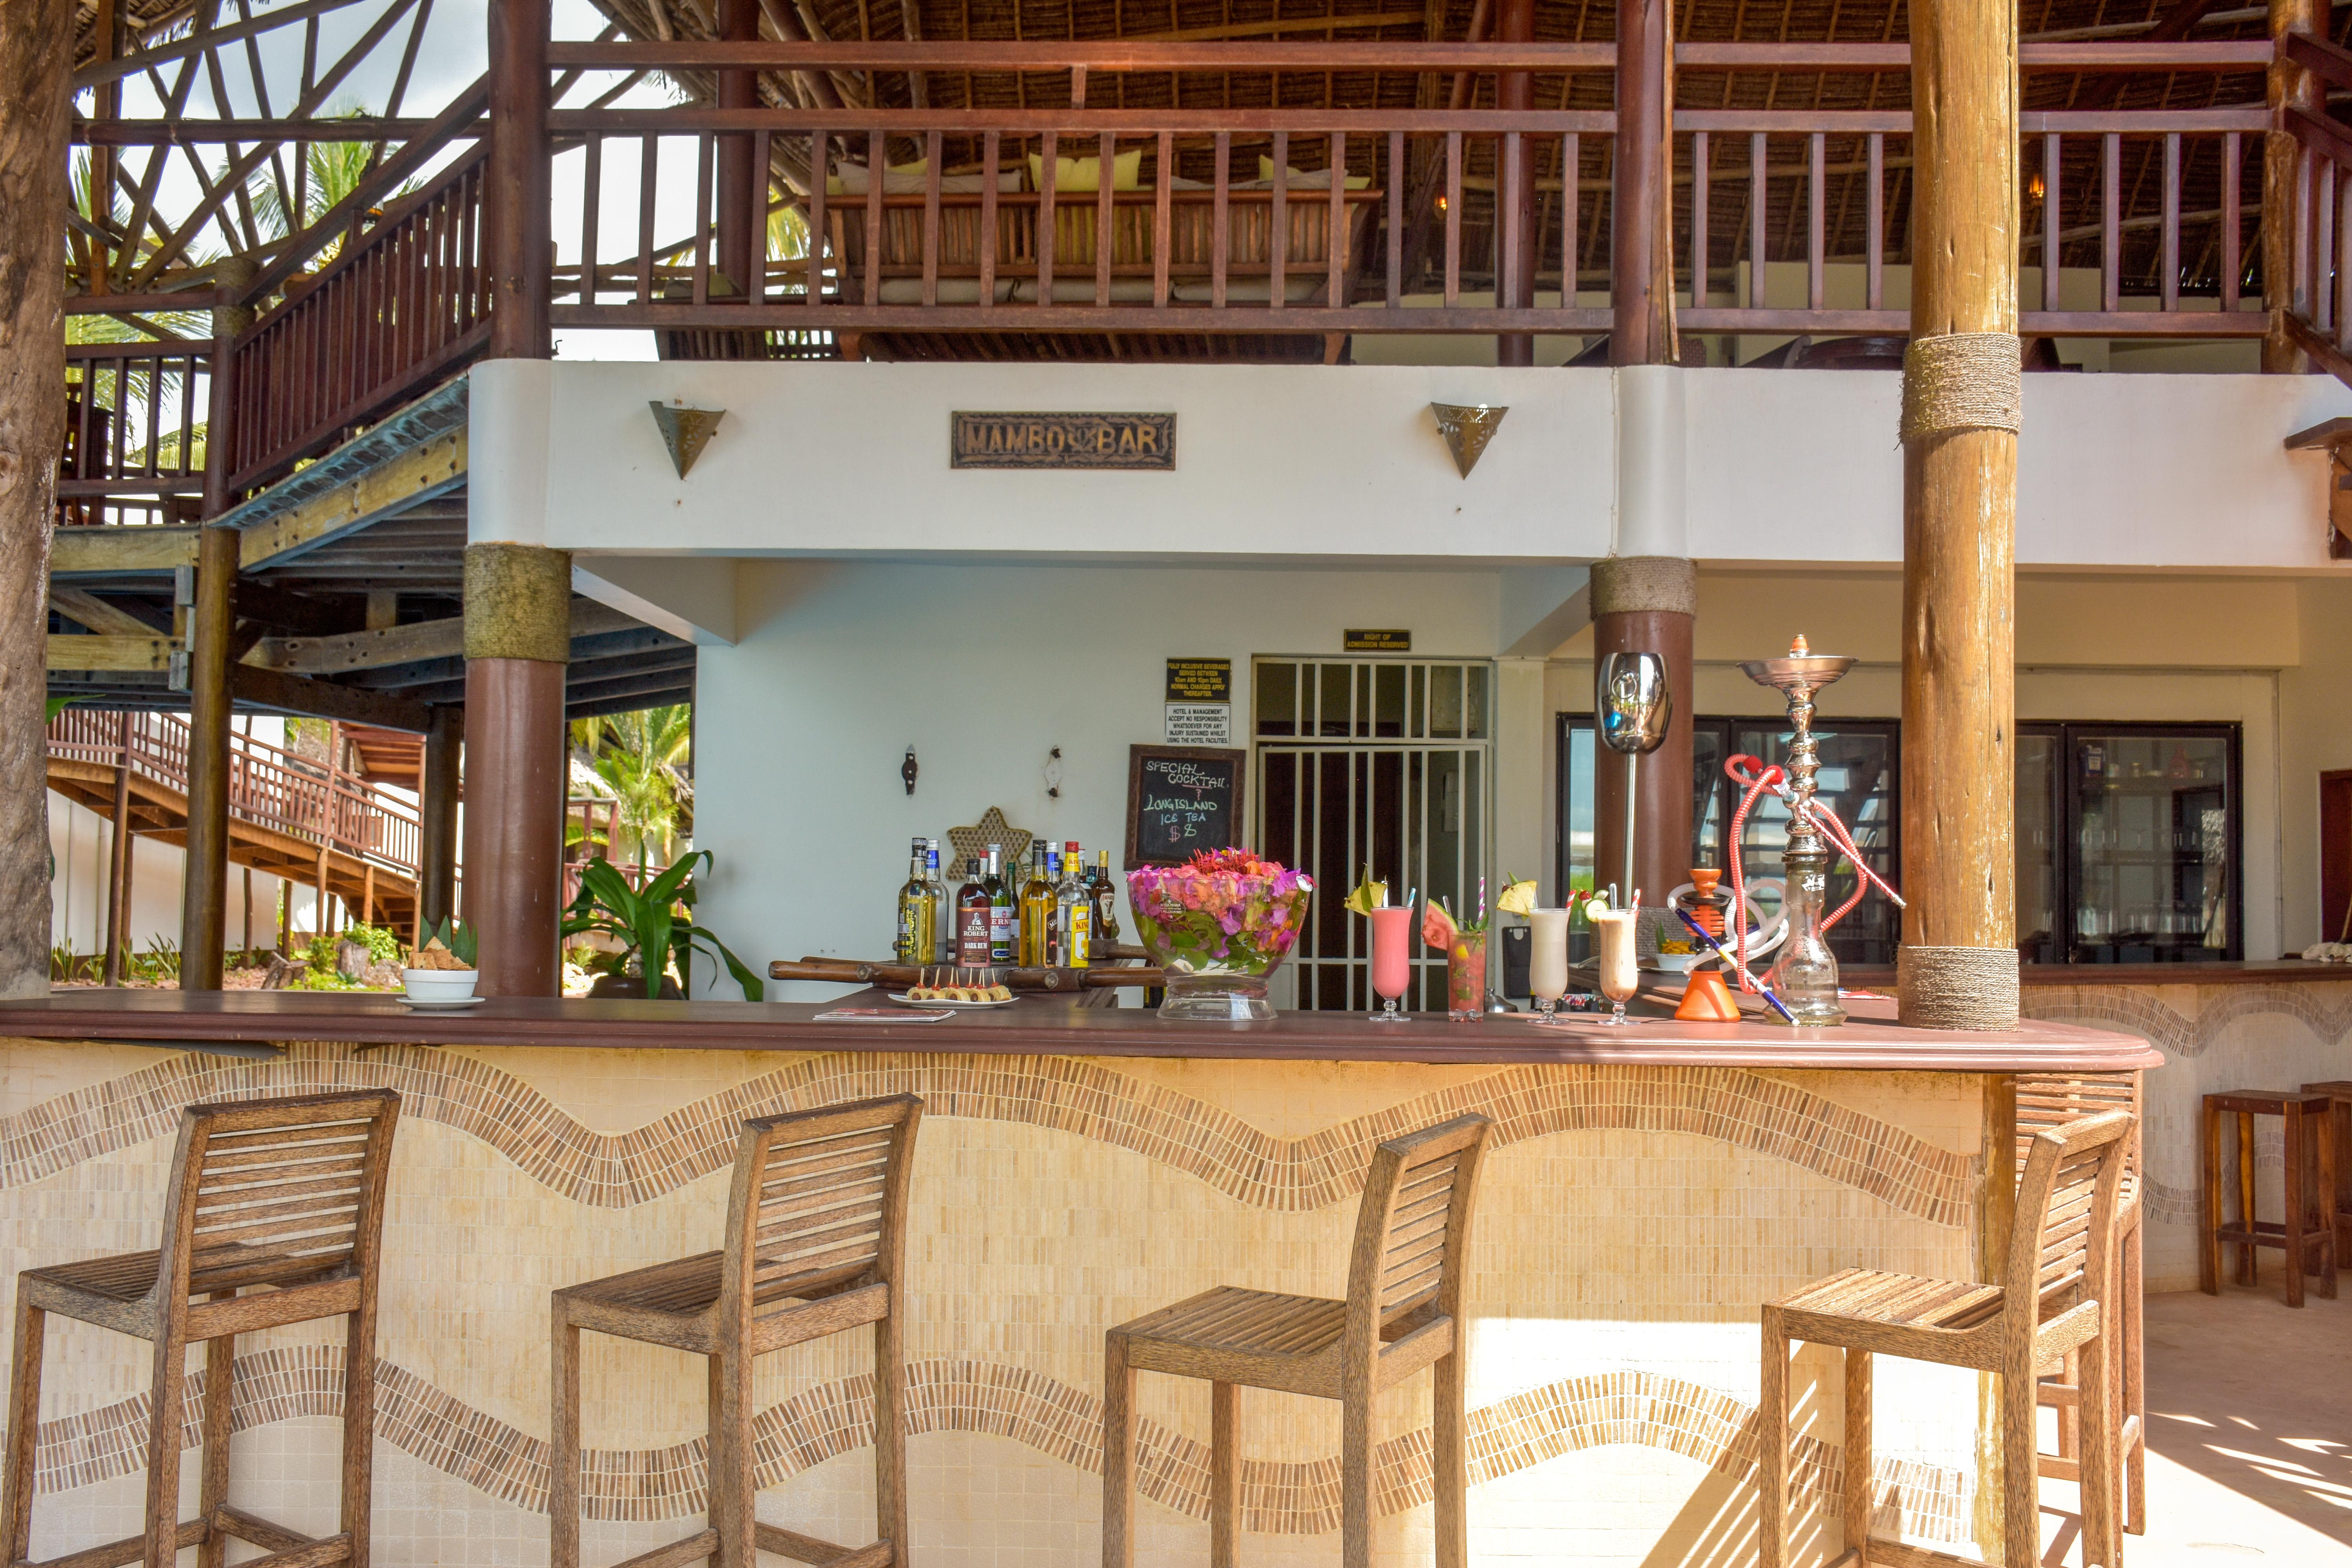 Kena Beach Hotel Zanzibar Exterior photo